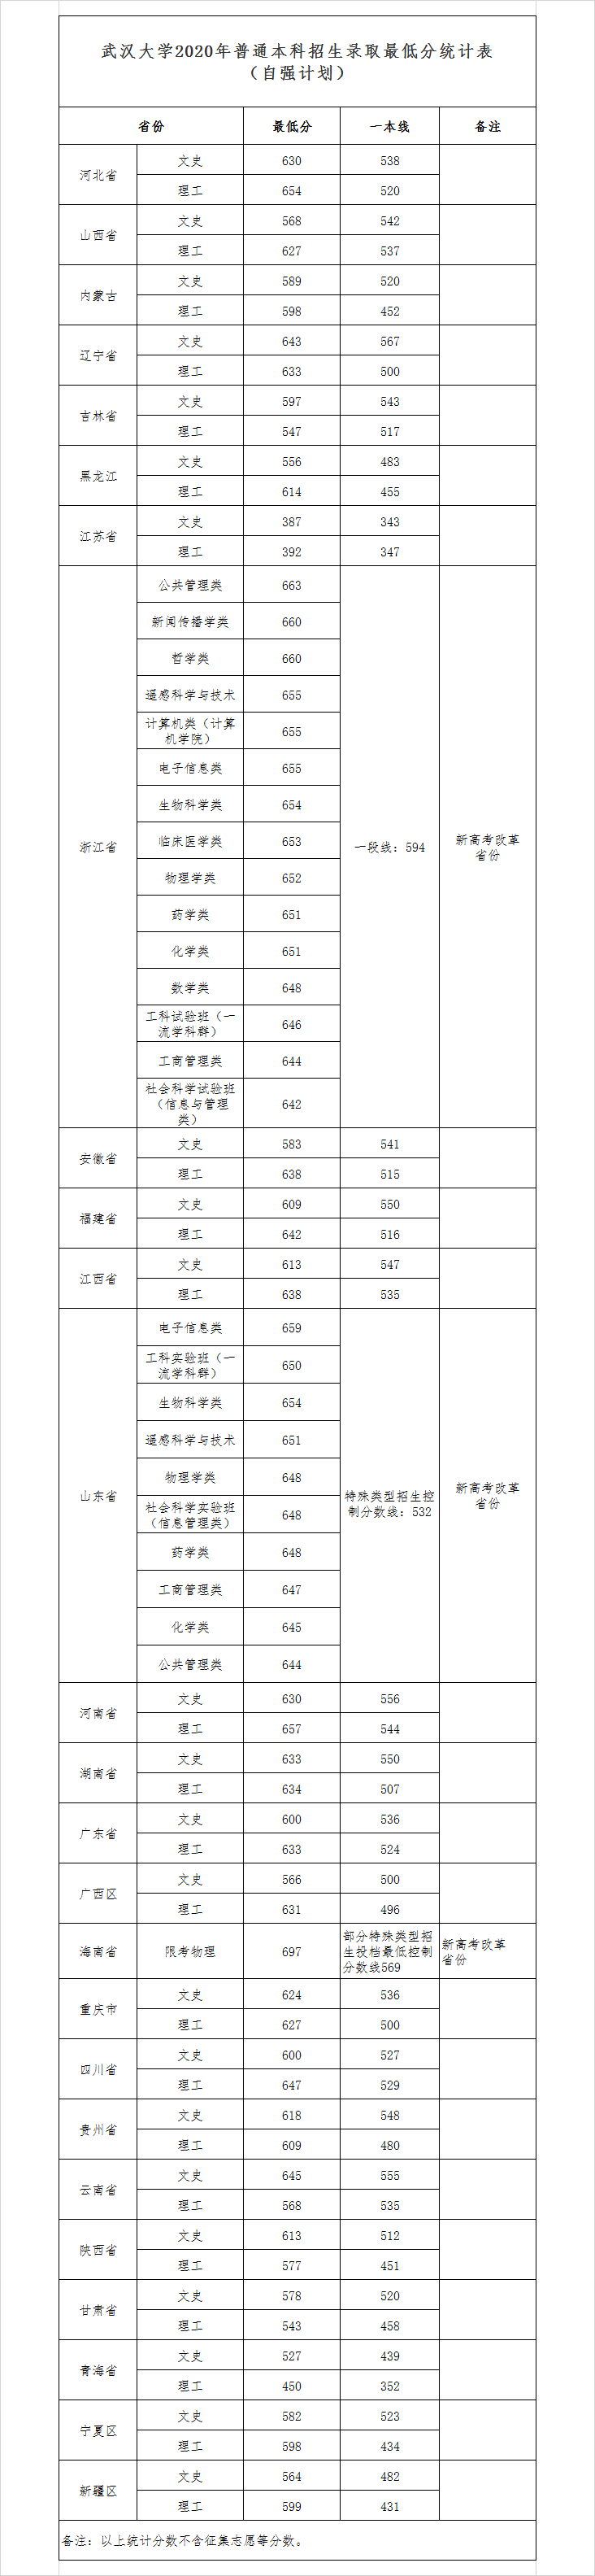 2021年武汉大学专业最低分和最低录取位次排名多少,附历年最低分数据